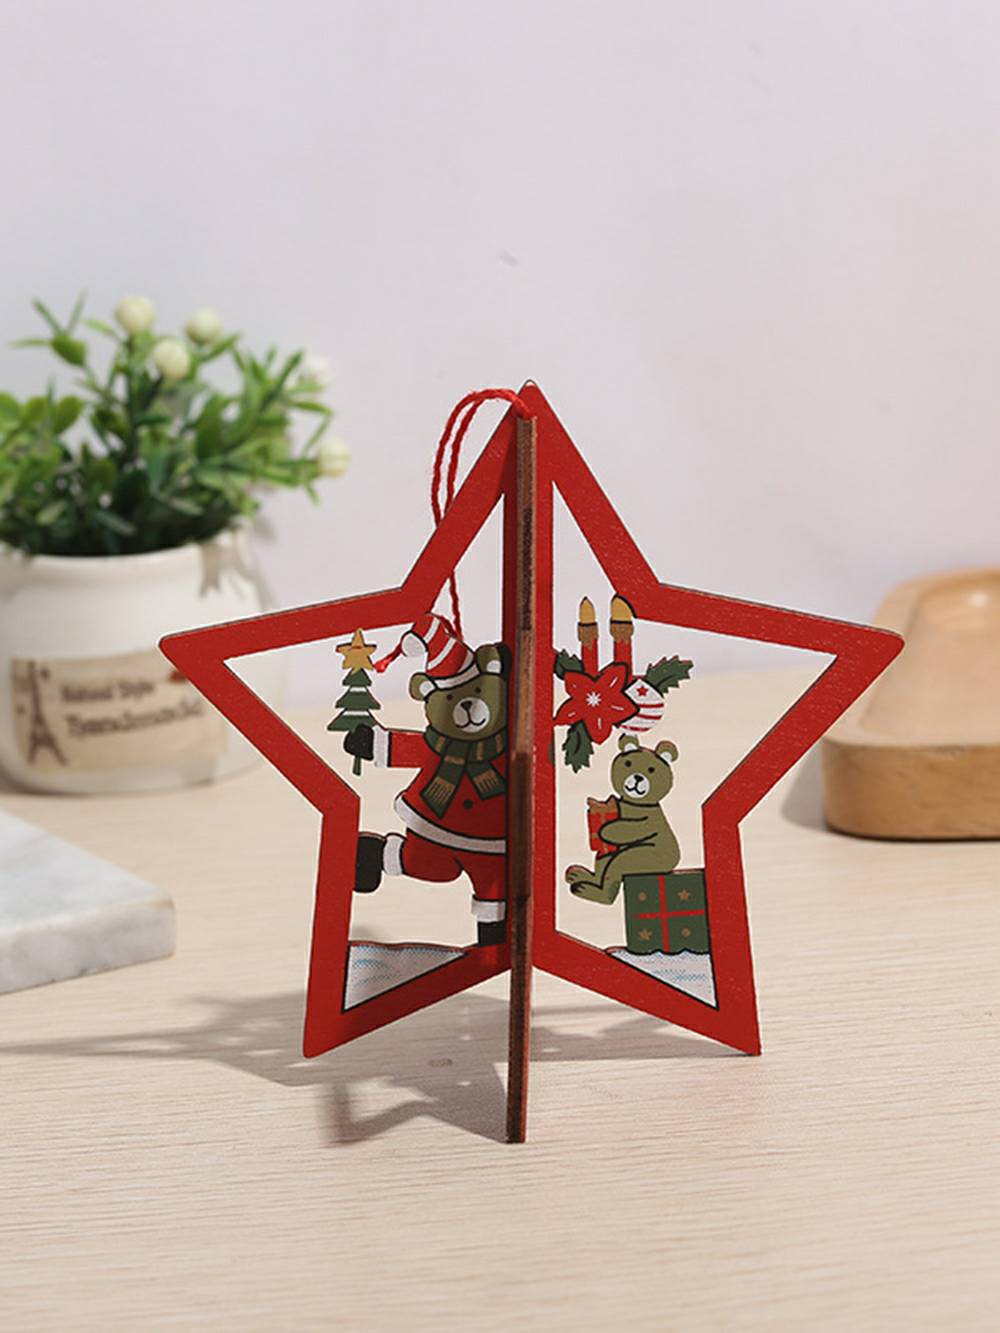 Décoration de Noël en bois peint avec flocon de neige, arbre, étoile, cloche